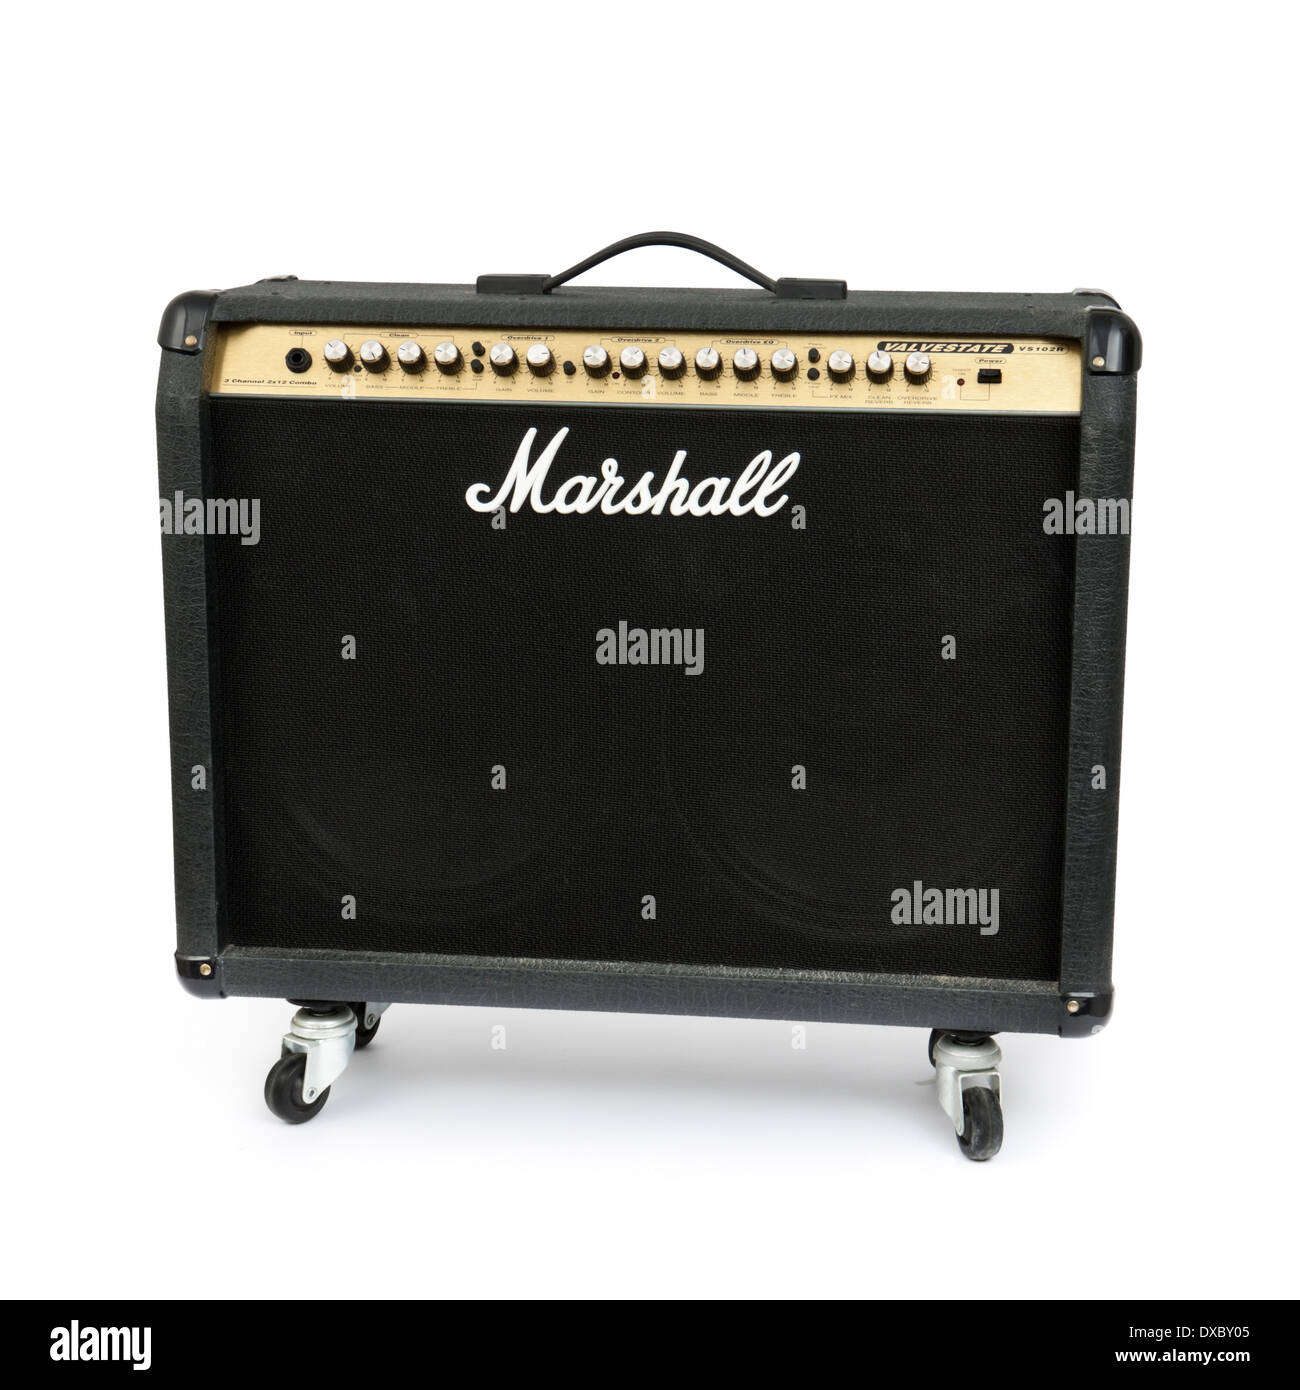 Marshall guitar amp Banque d'images détourées - Alamy